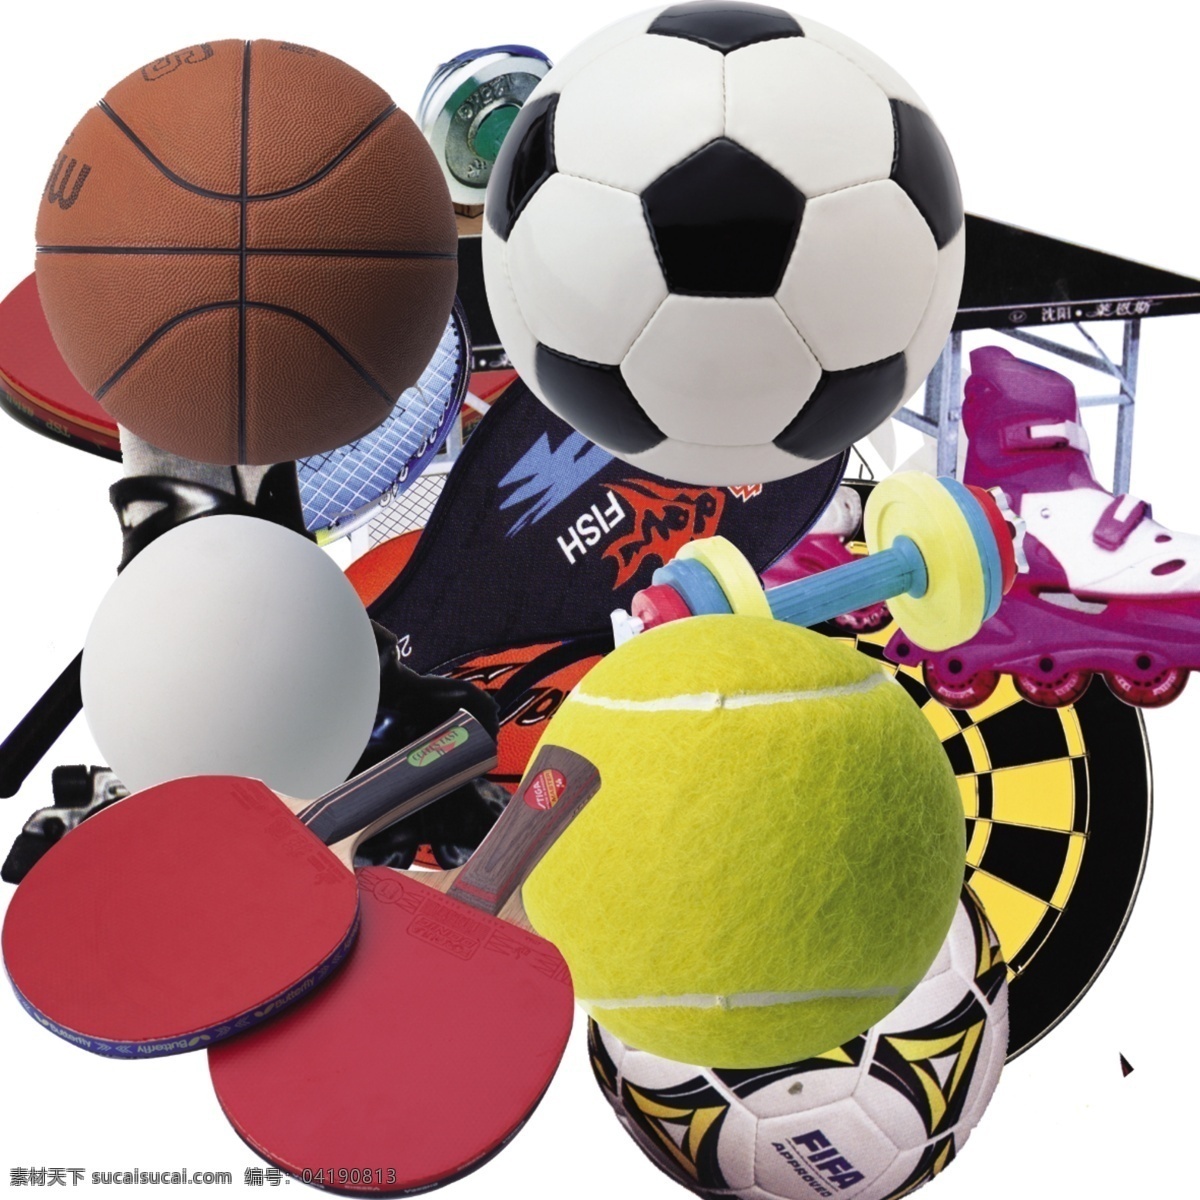 体育用品 足球 篮球 国外广告设计 广告设计模板 源文件